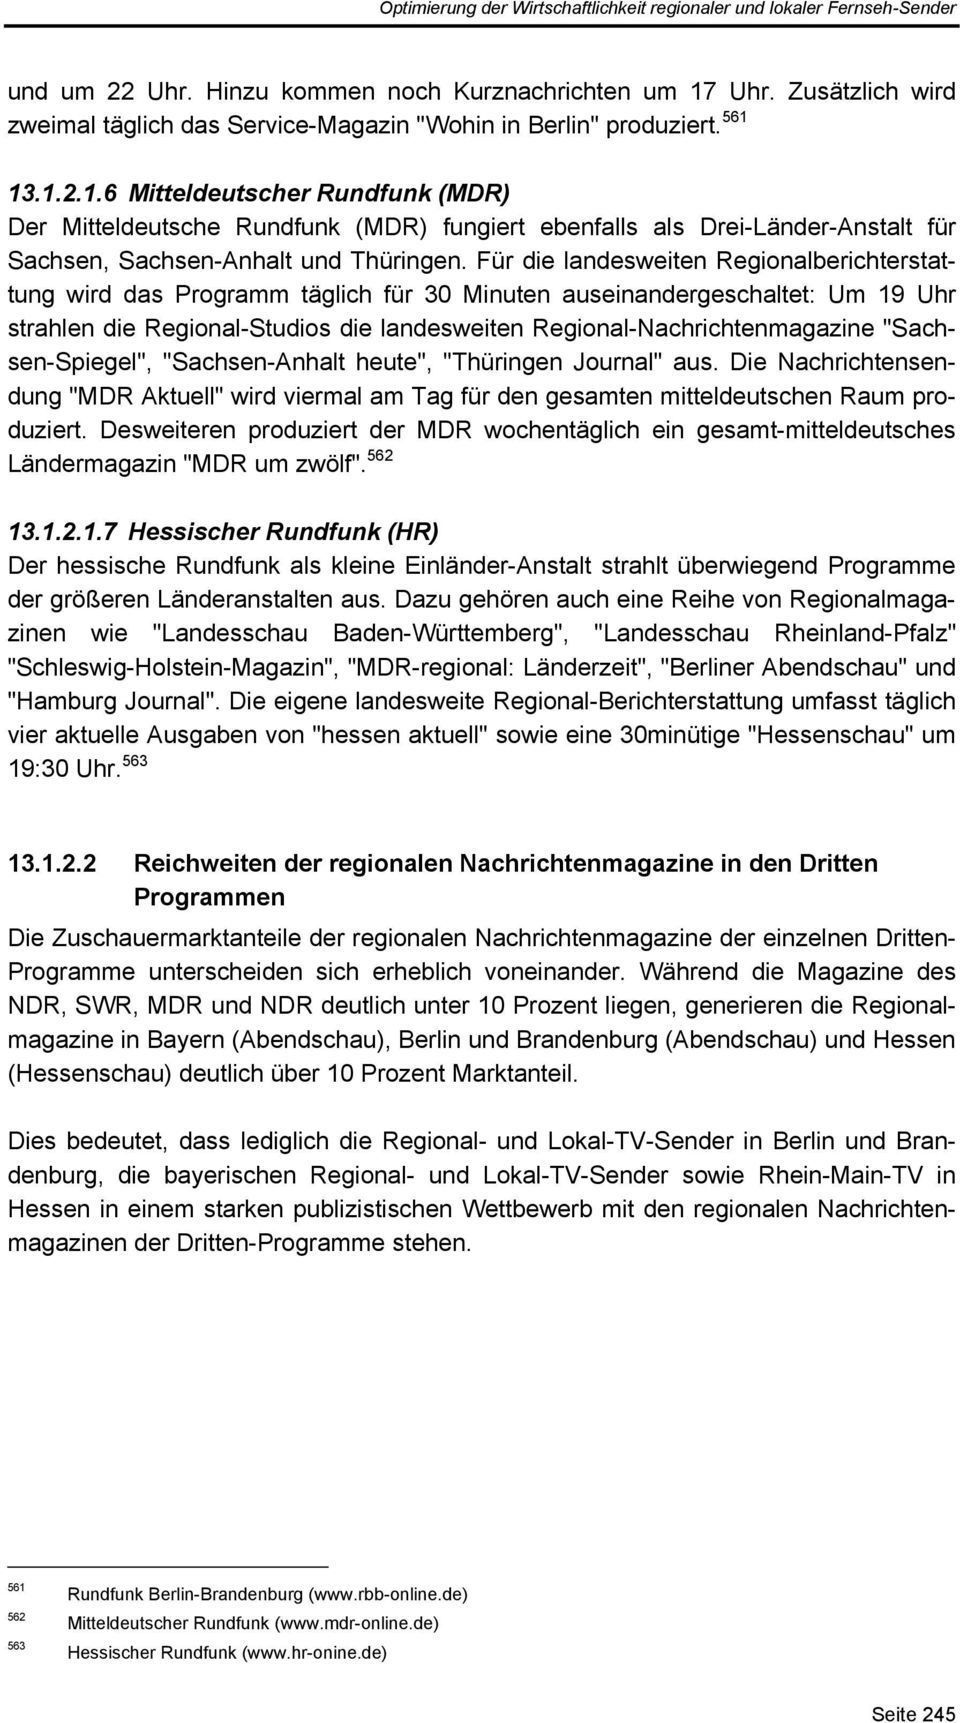 13.1.2.1.6 Mitteldeutscher Rundfunk (MDR) Der Mitteldeutsche Rundfunk (MDR) fungiert ebenfalls als Drei-Länder-Anstalt für Sachsen, Sachsen-Anhalt und Thüringen.